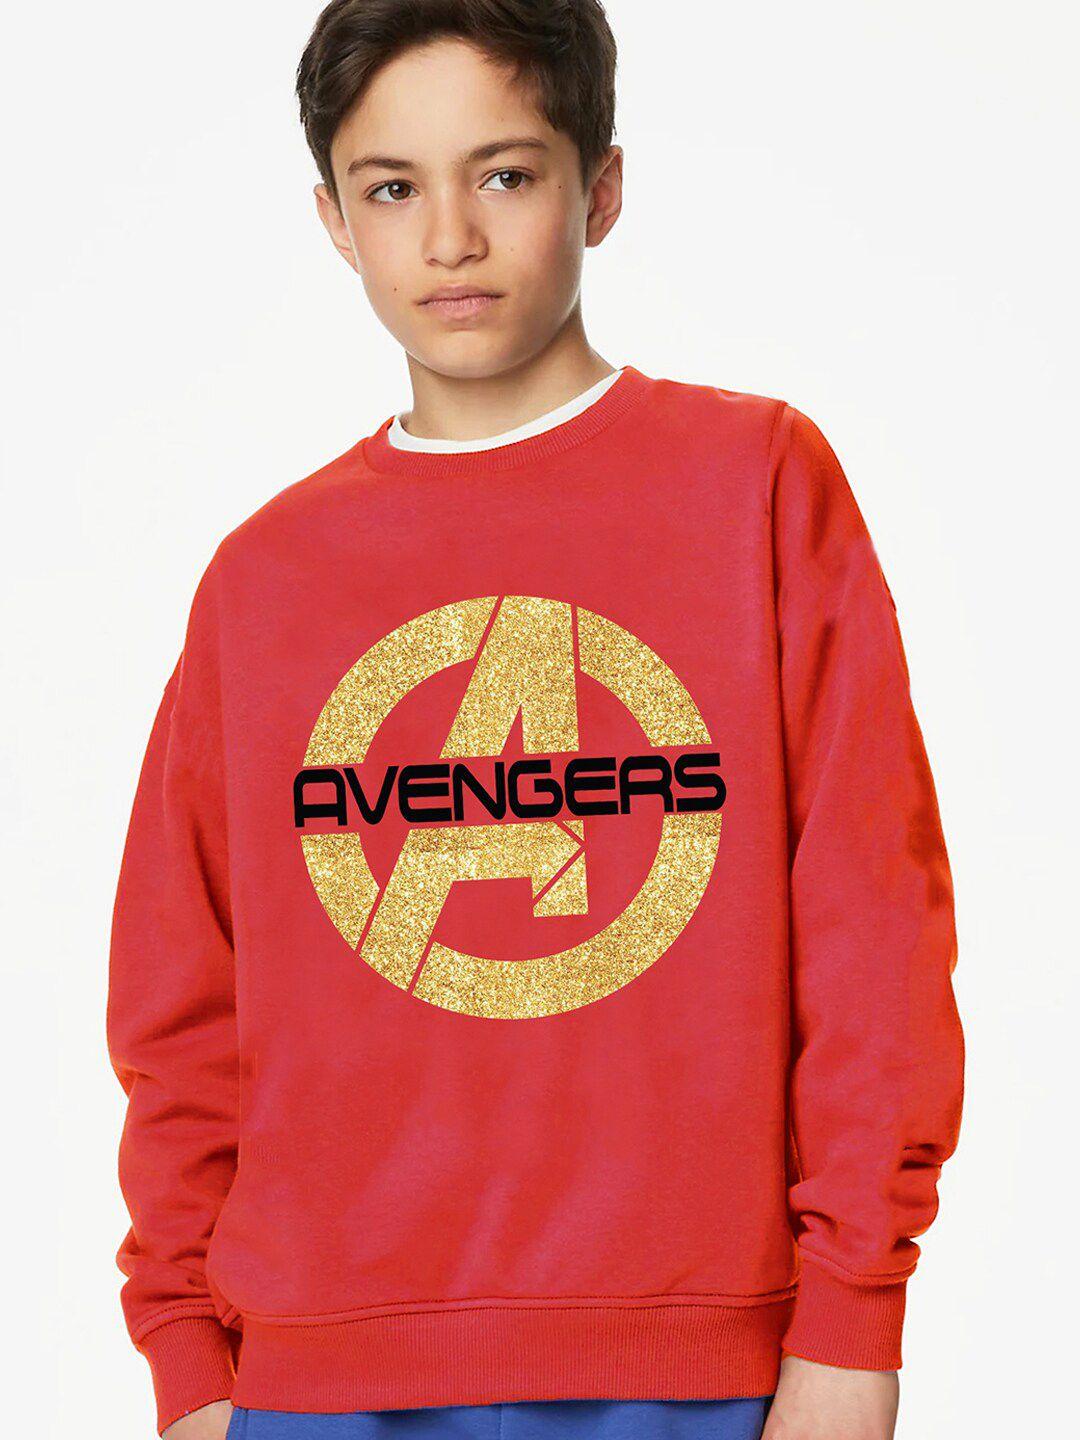 kinsey-boys-avengers-printed-sweatshirt